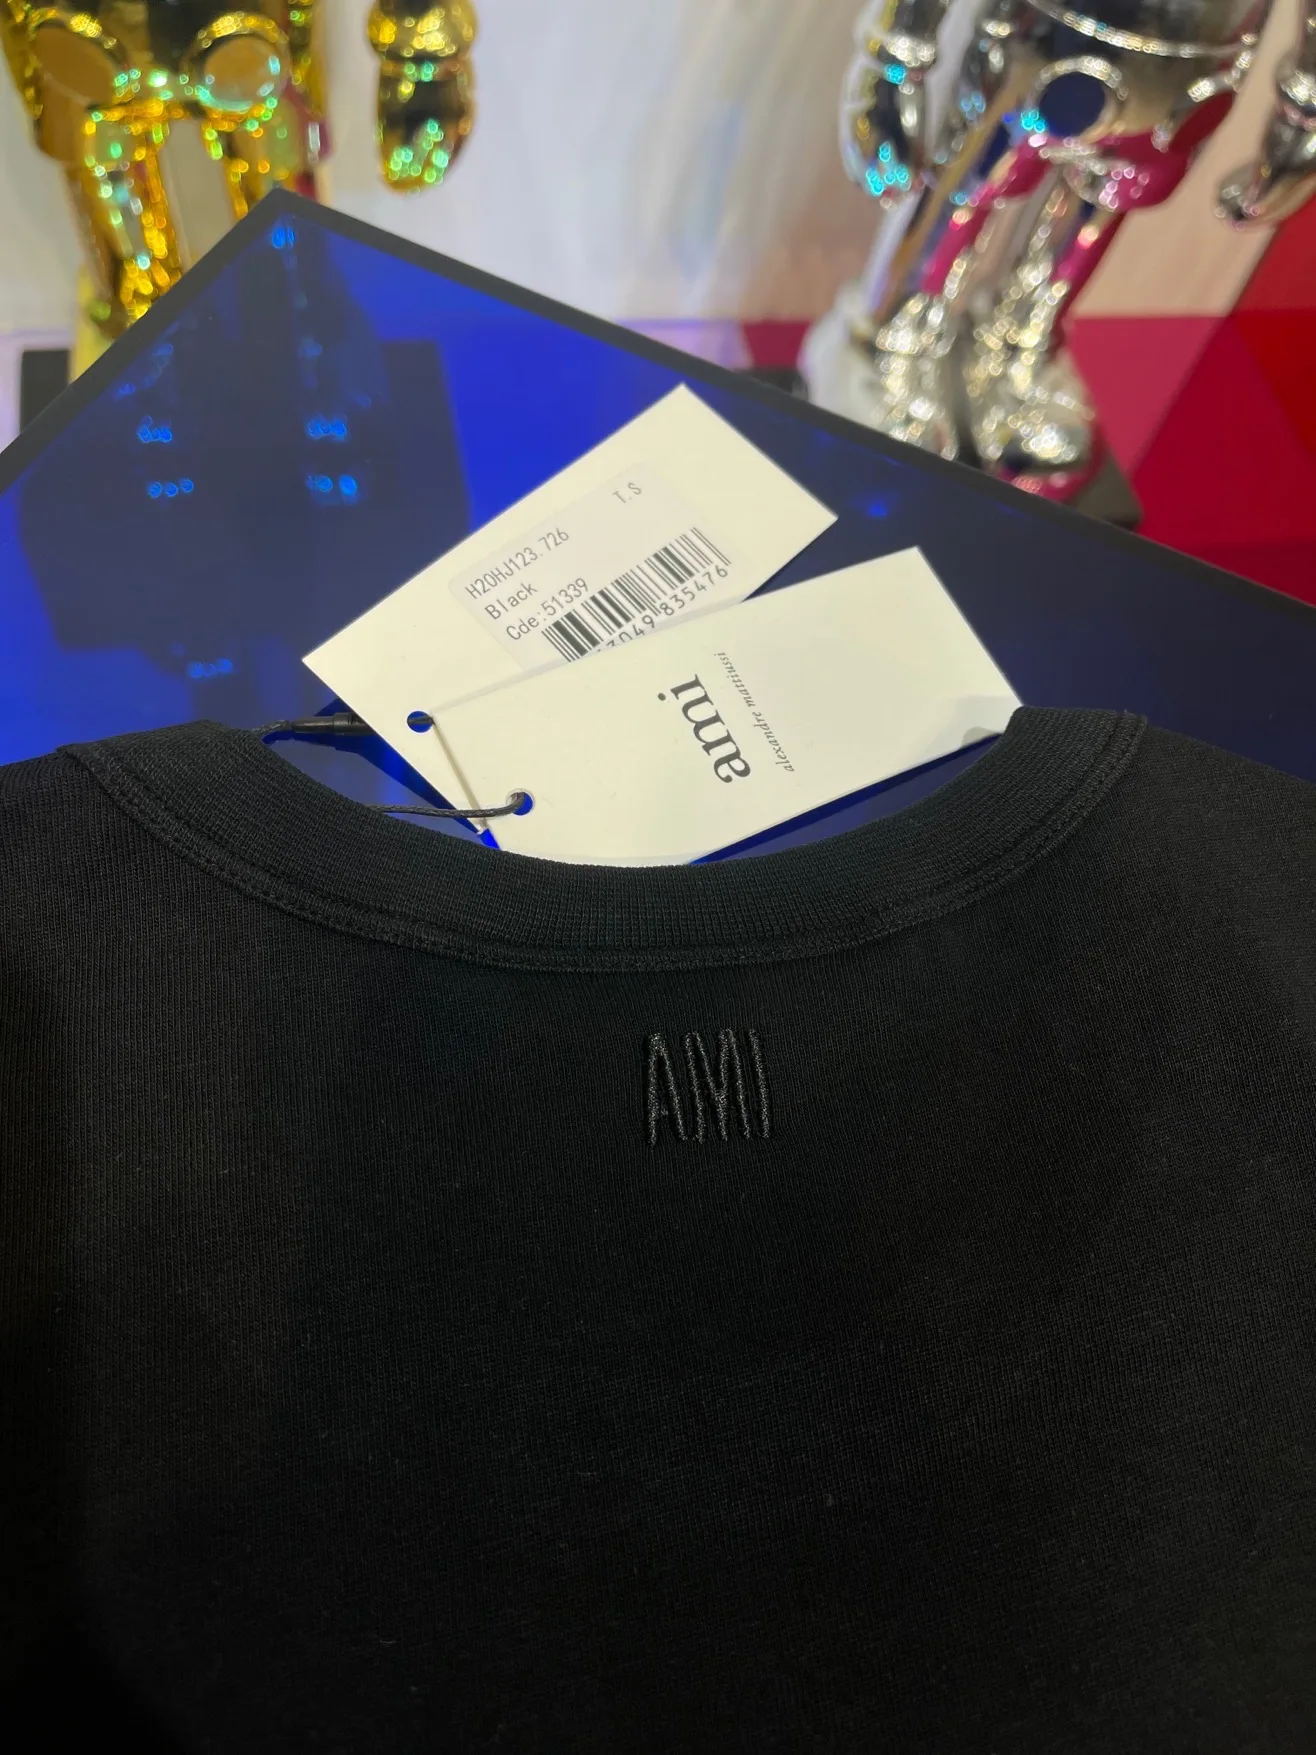 

21ss New luxurious brands design Ami Paris Limit Edition Cotton Tee Shirt Men Women Streetwear Sweatshirt Outdoor T-shirts